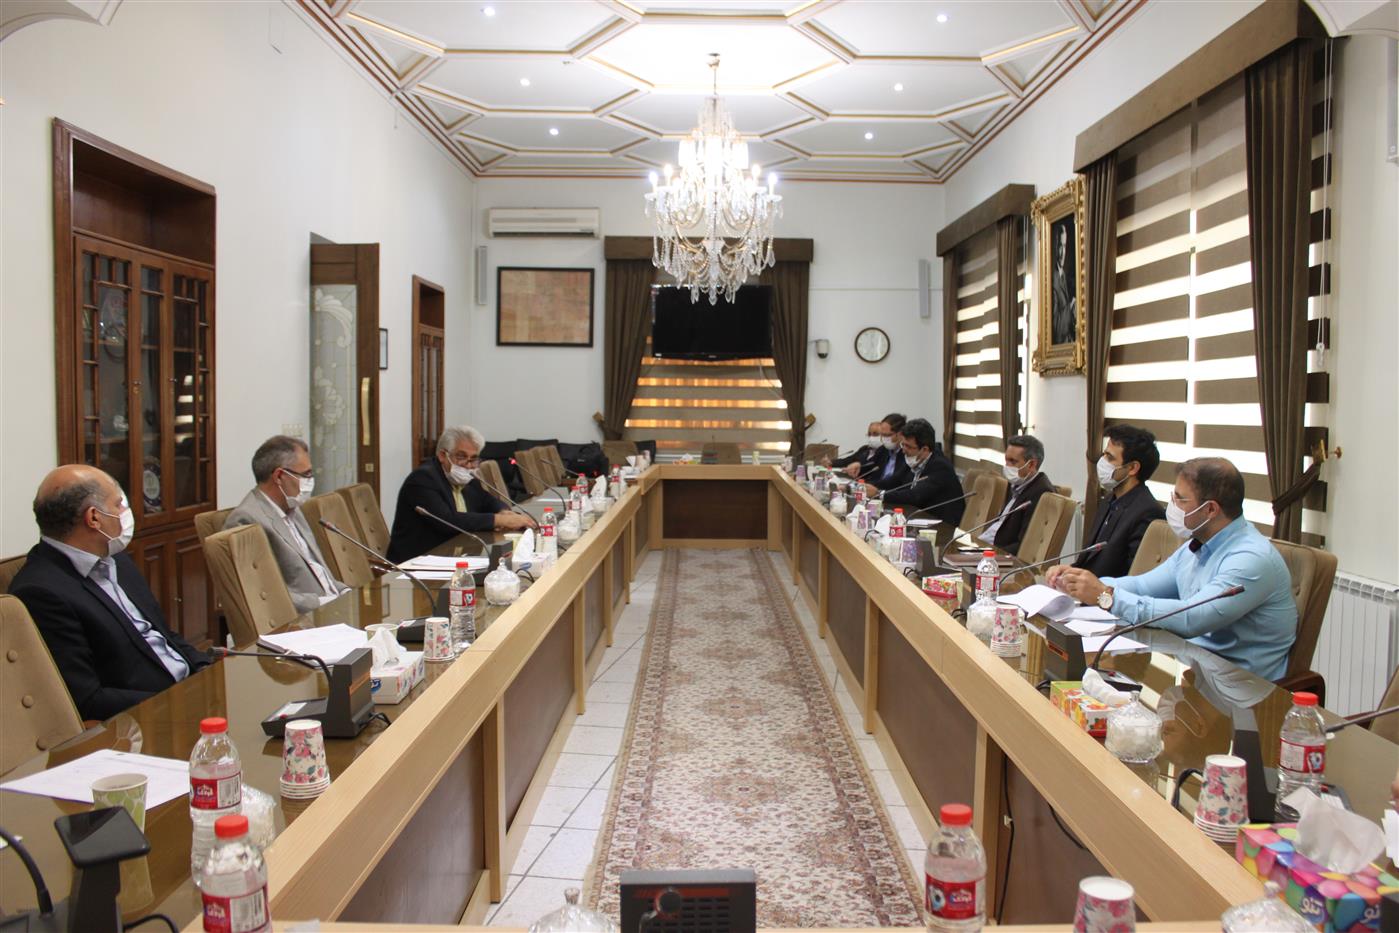 آخرین نشست هماهنگی جهت ایجاد پنجره واحد فیزیکی در اتاق تبریز تشکیل شد.